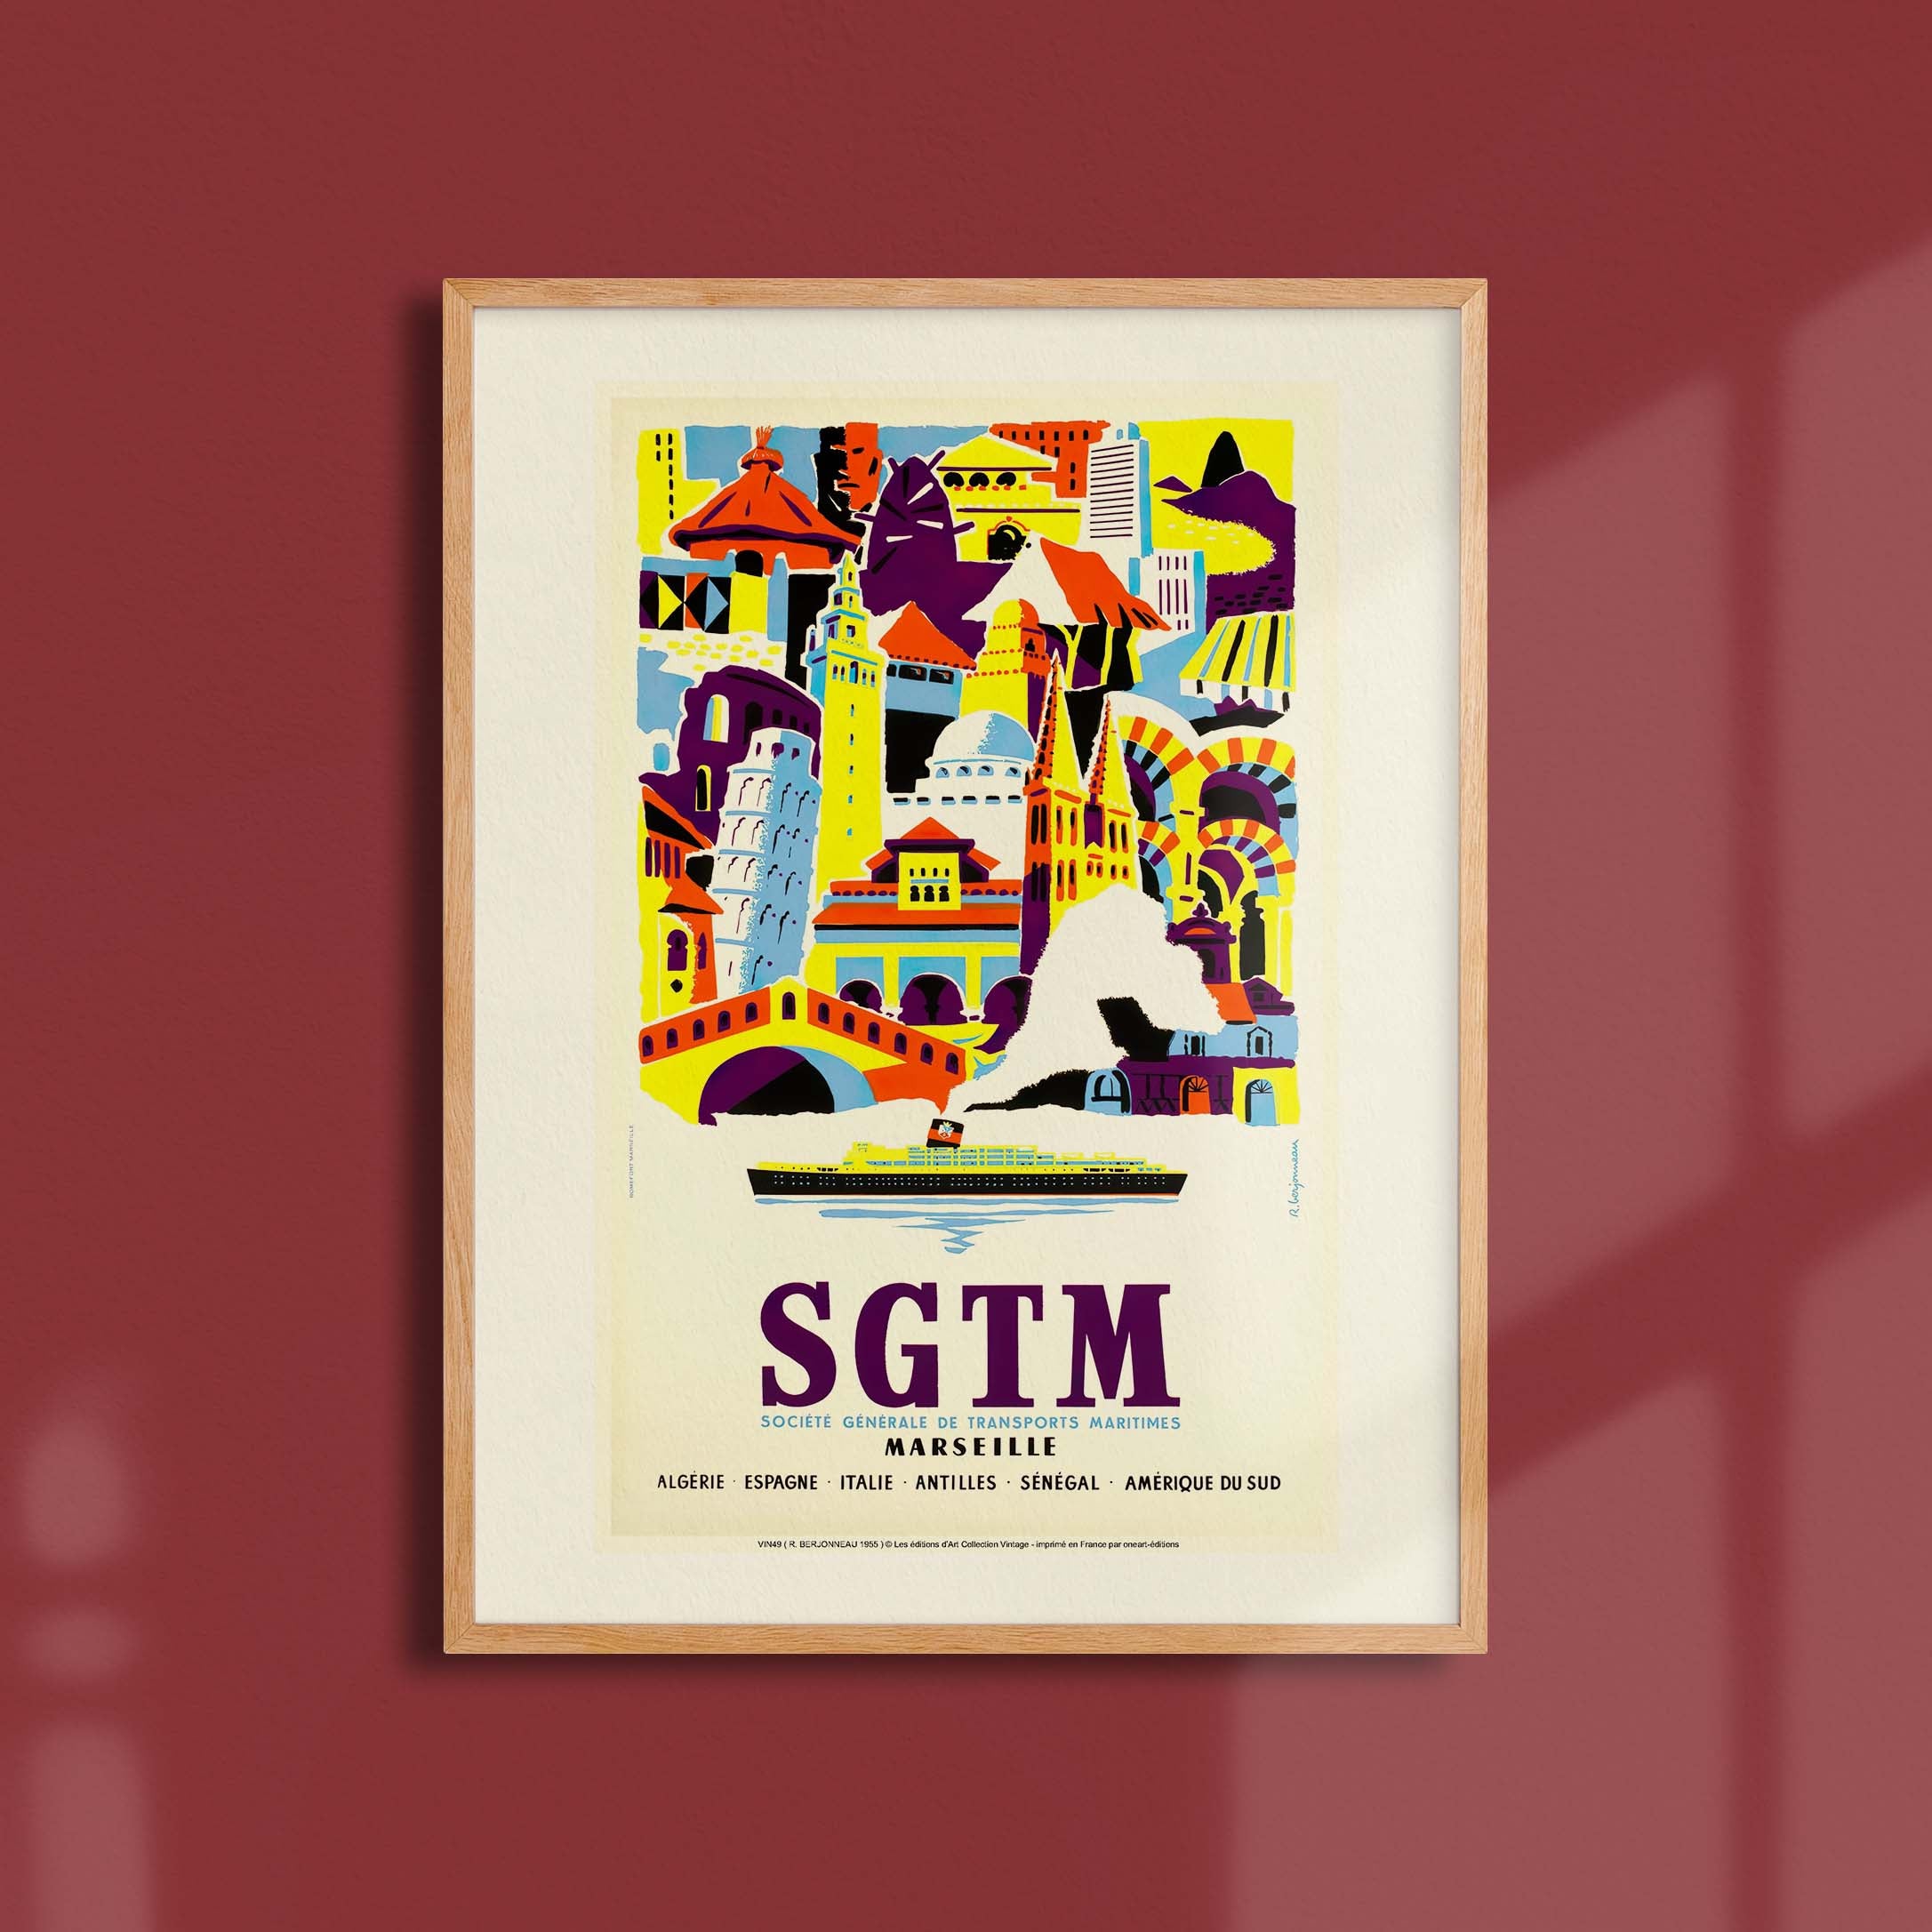 Affiche publicité vintage - SGTM-oneart.fr